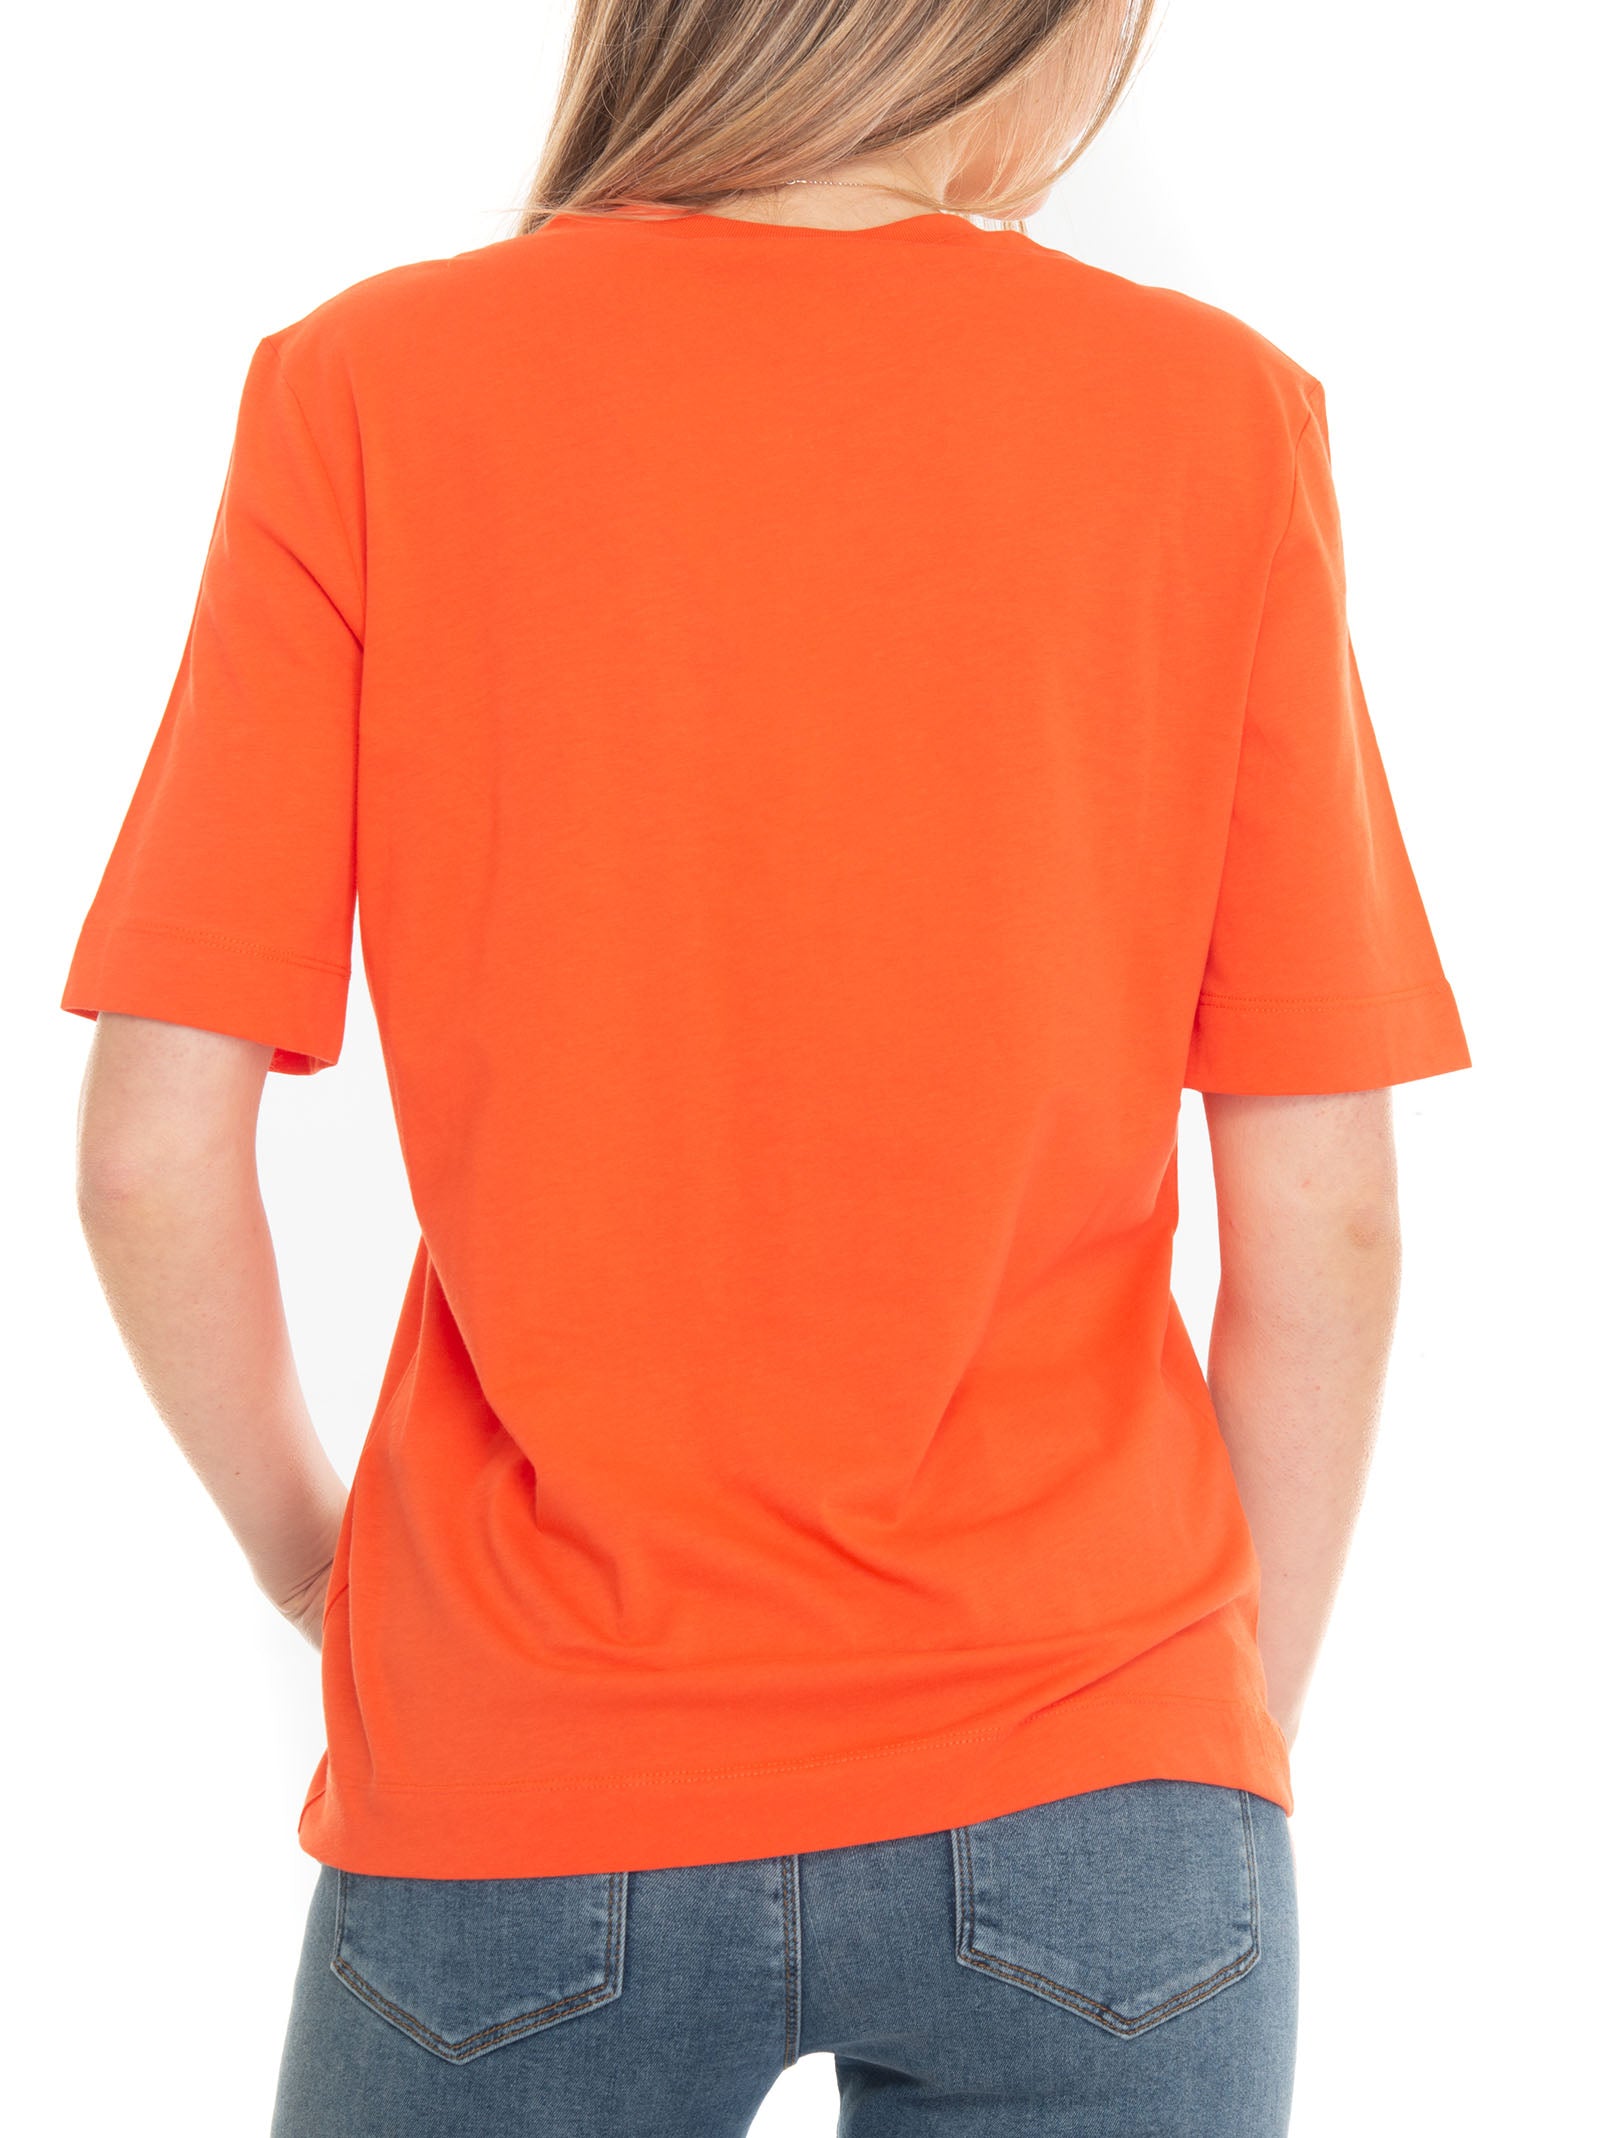 Love Moschino Women's Orange Crew-neck T-shirt